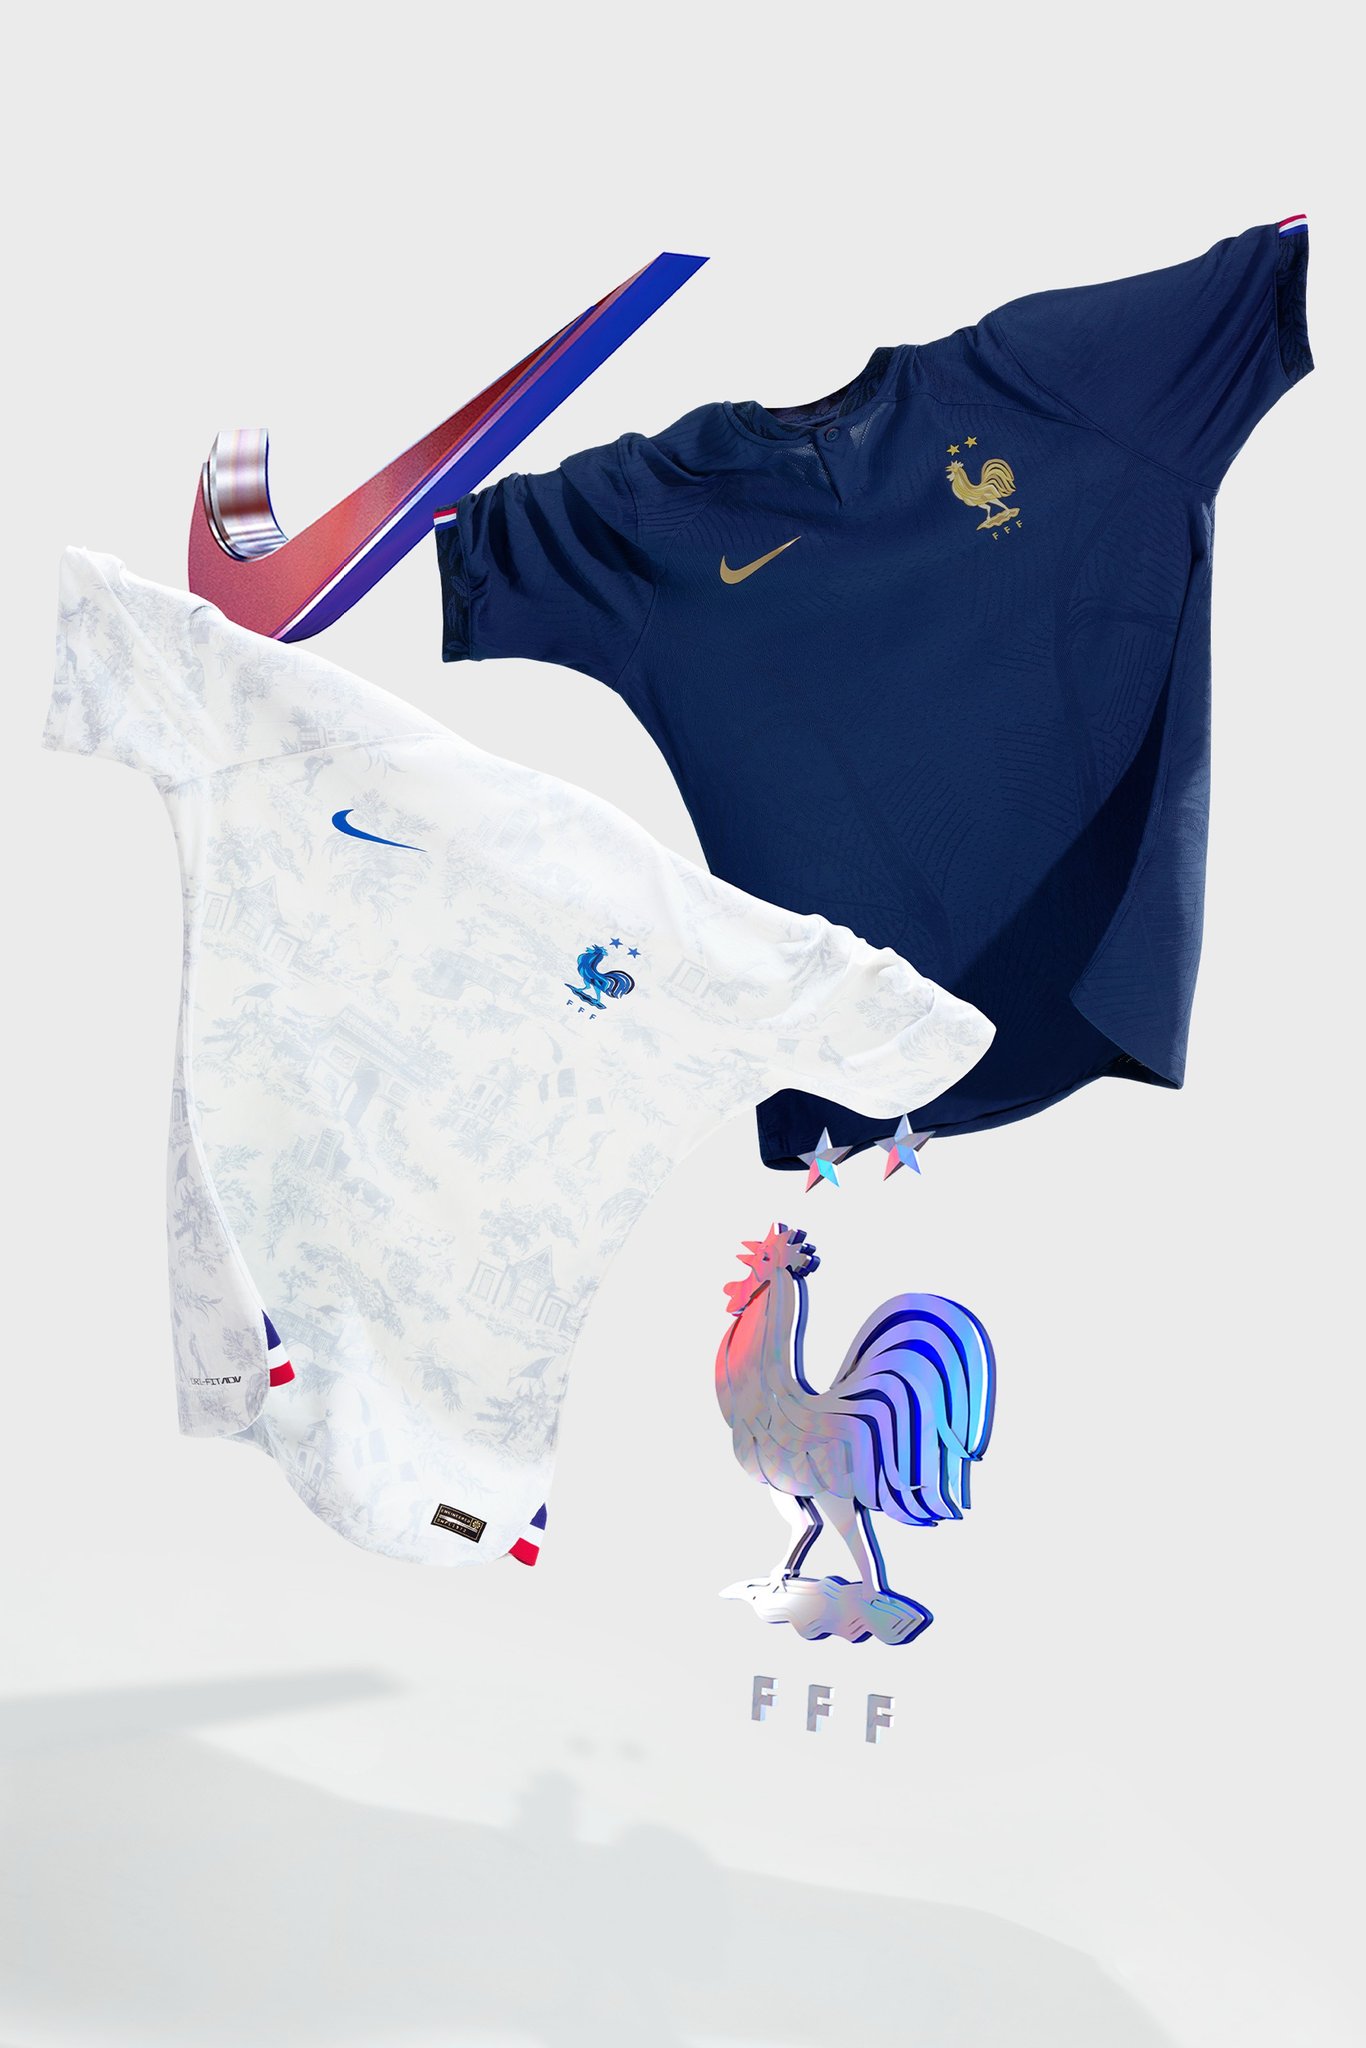 پیراهن فرانسه در جام جهانی 2022 قطر